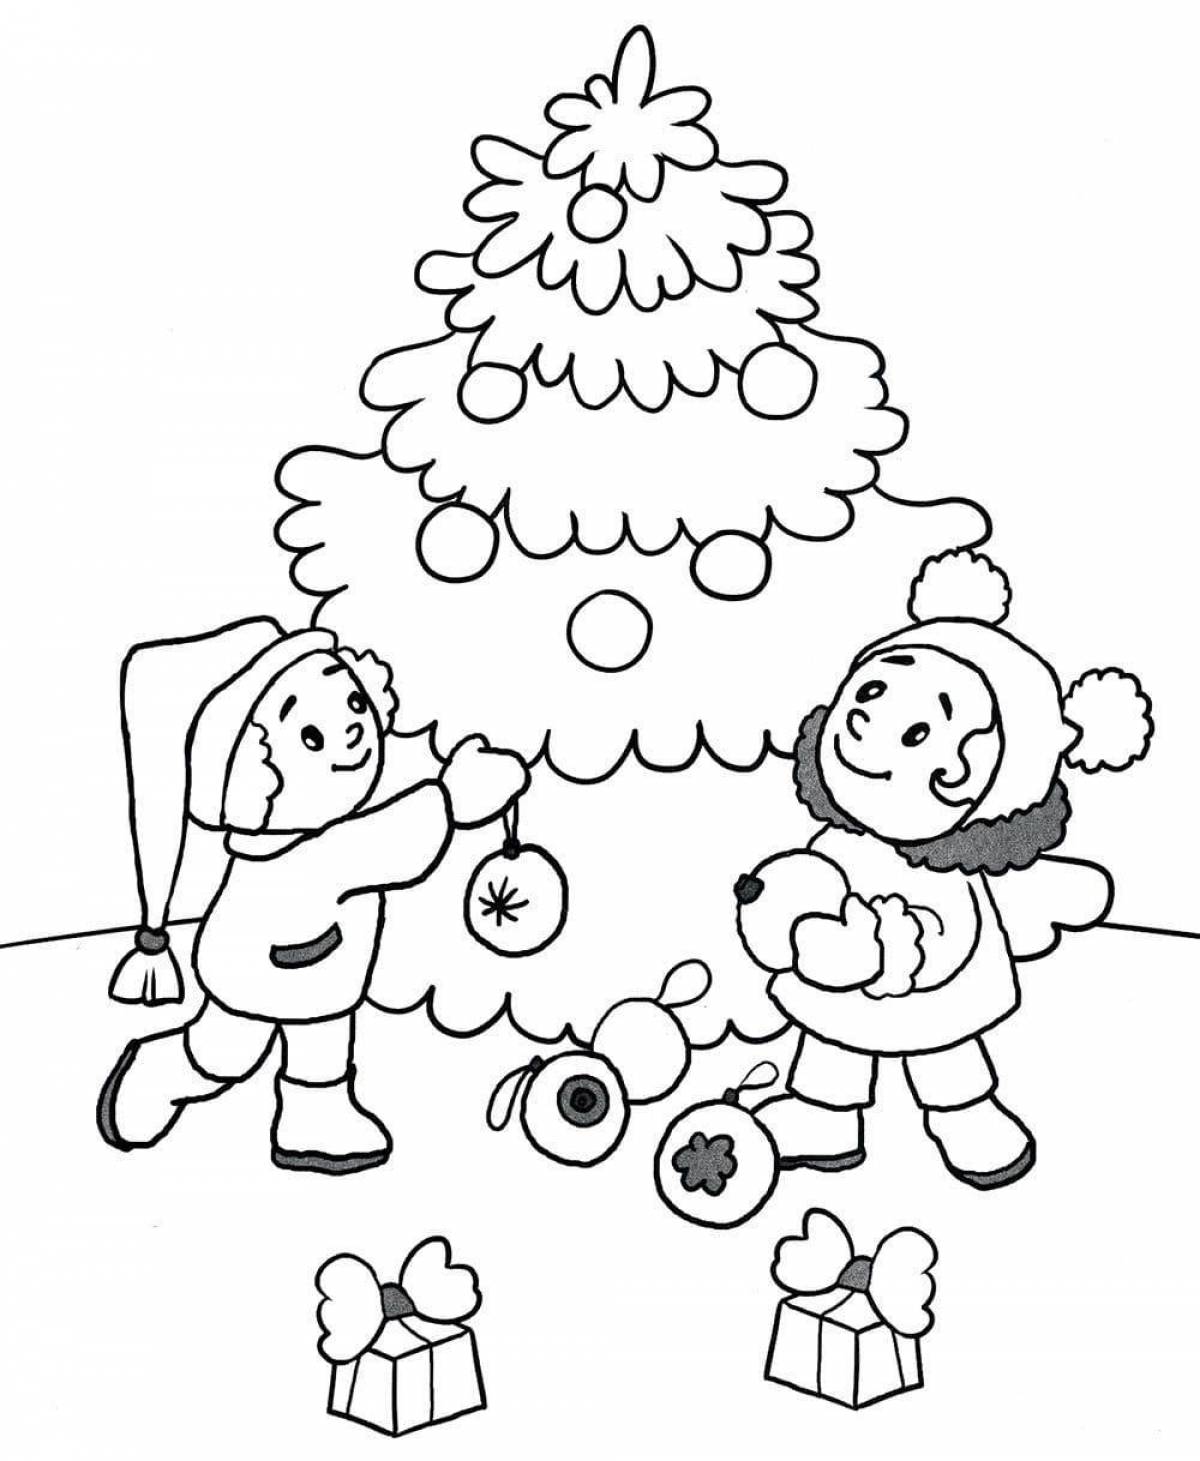 Игривая страница раскраски дерева для детей 3-4 лет